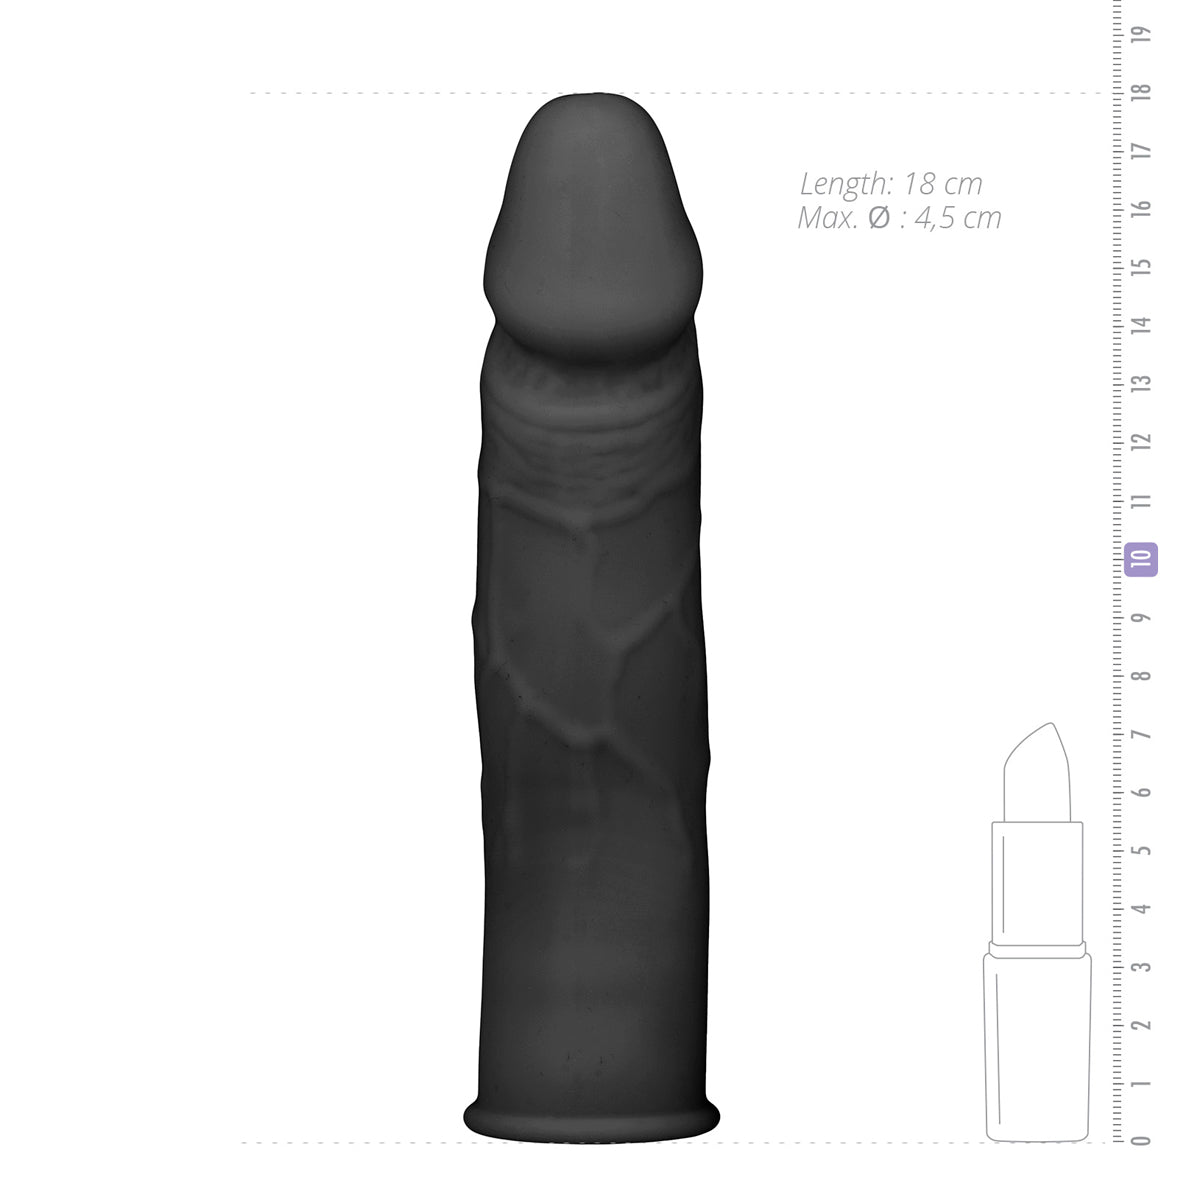 Zwarte realistische penisverlenger van het merk EasyToys. Gemaakt van siliconen en te koop bij Flavourez.